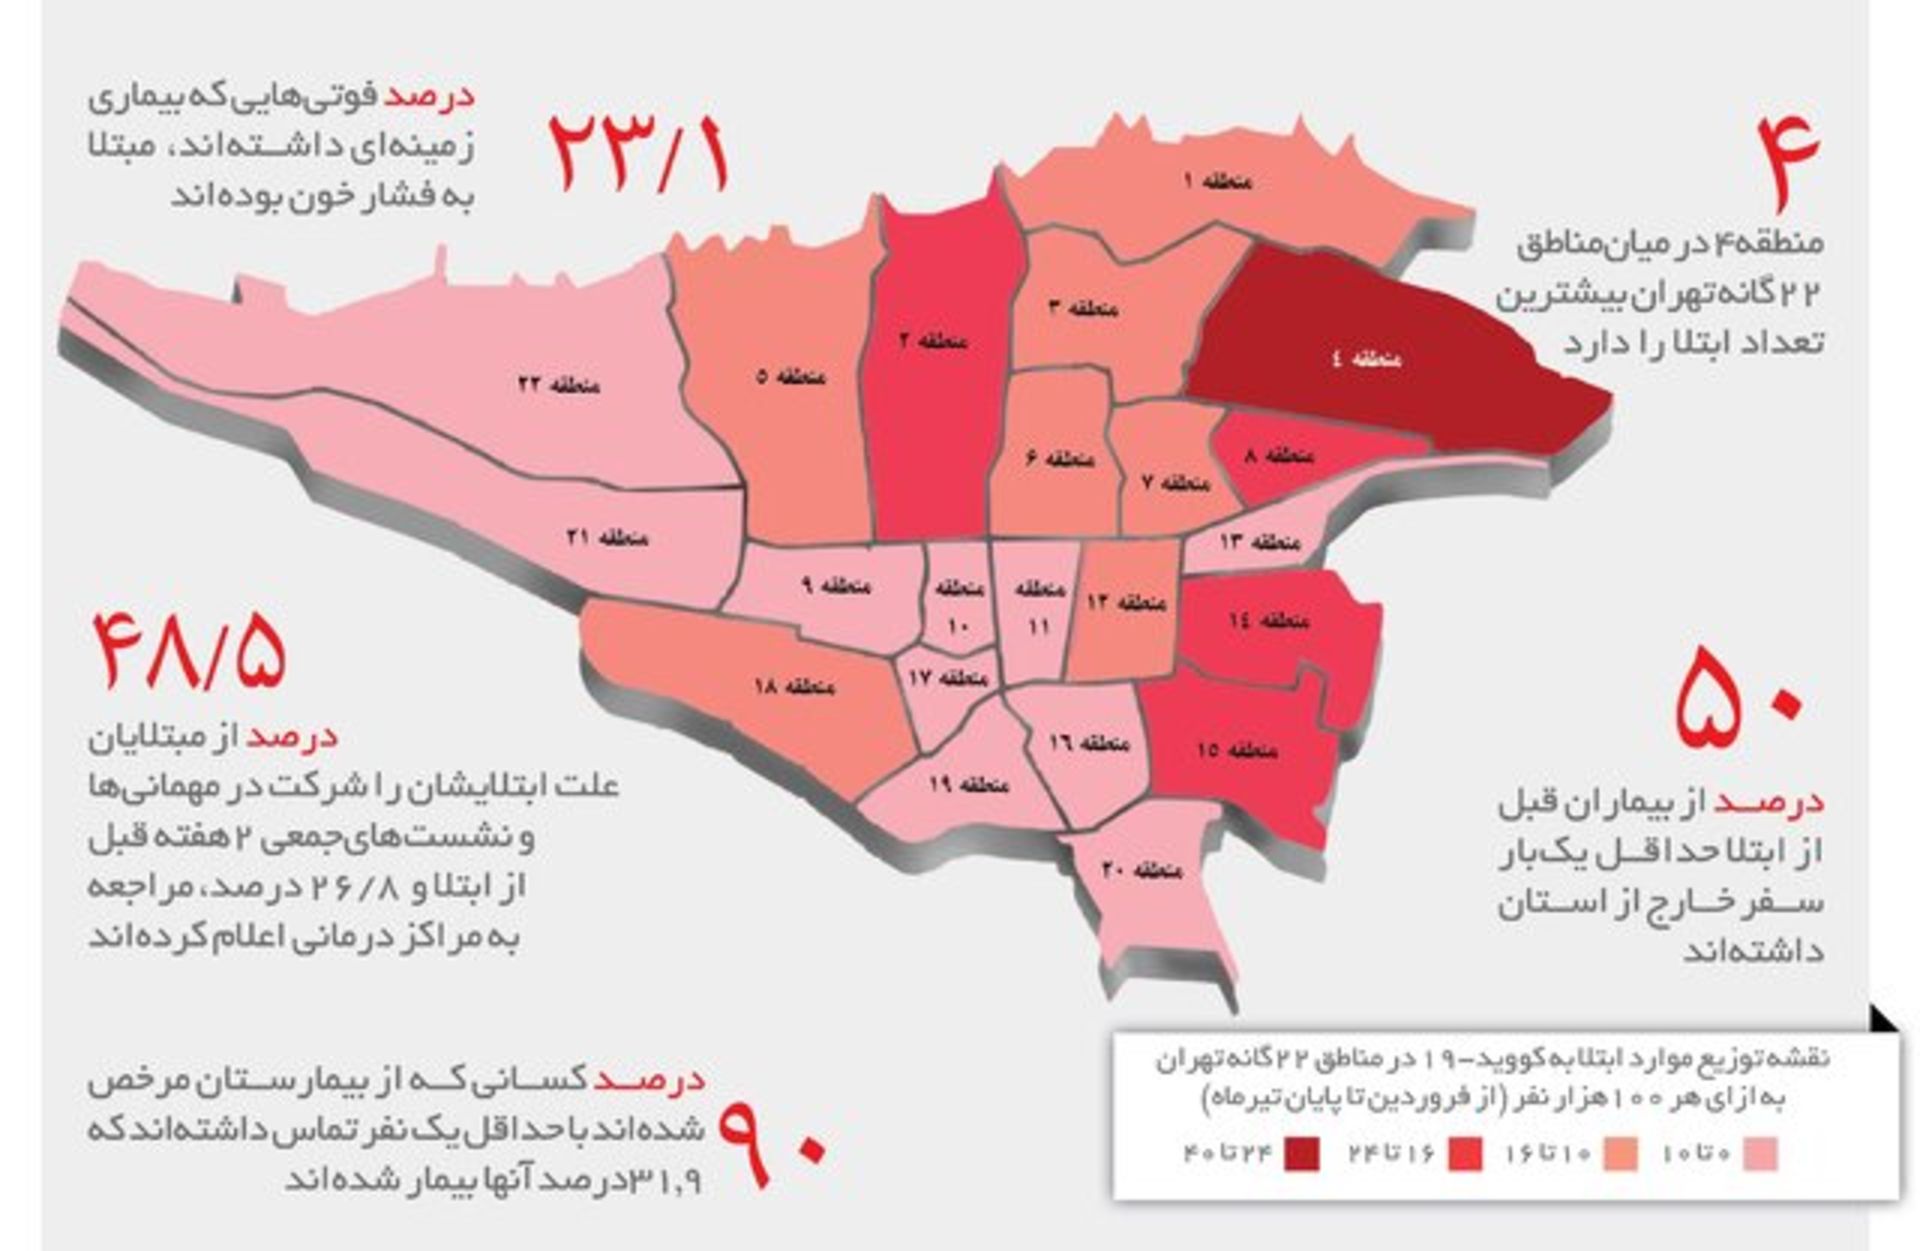 مرجع متخصصين ايران نقشه پراكندگي شيوع كرونا در شهر تهران / مناطق درگير كرونا در تهران